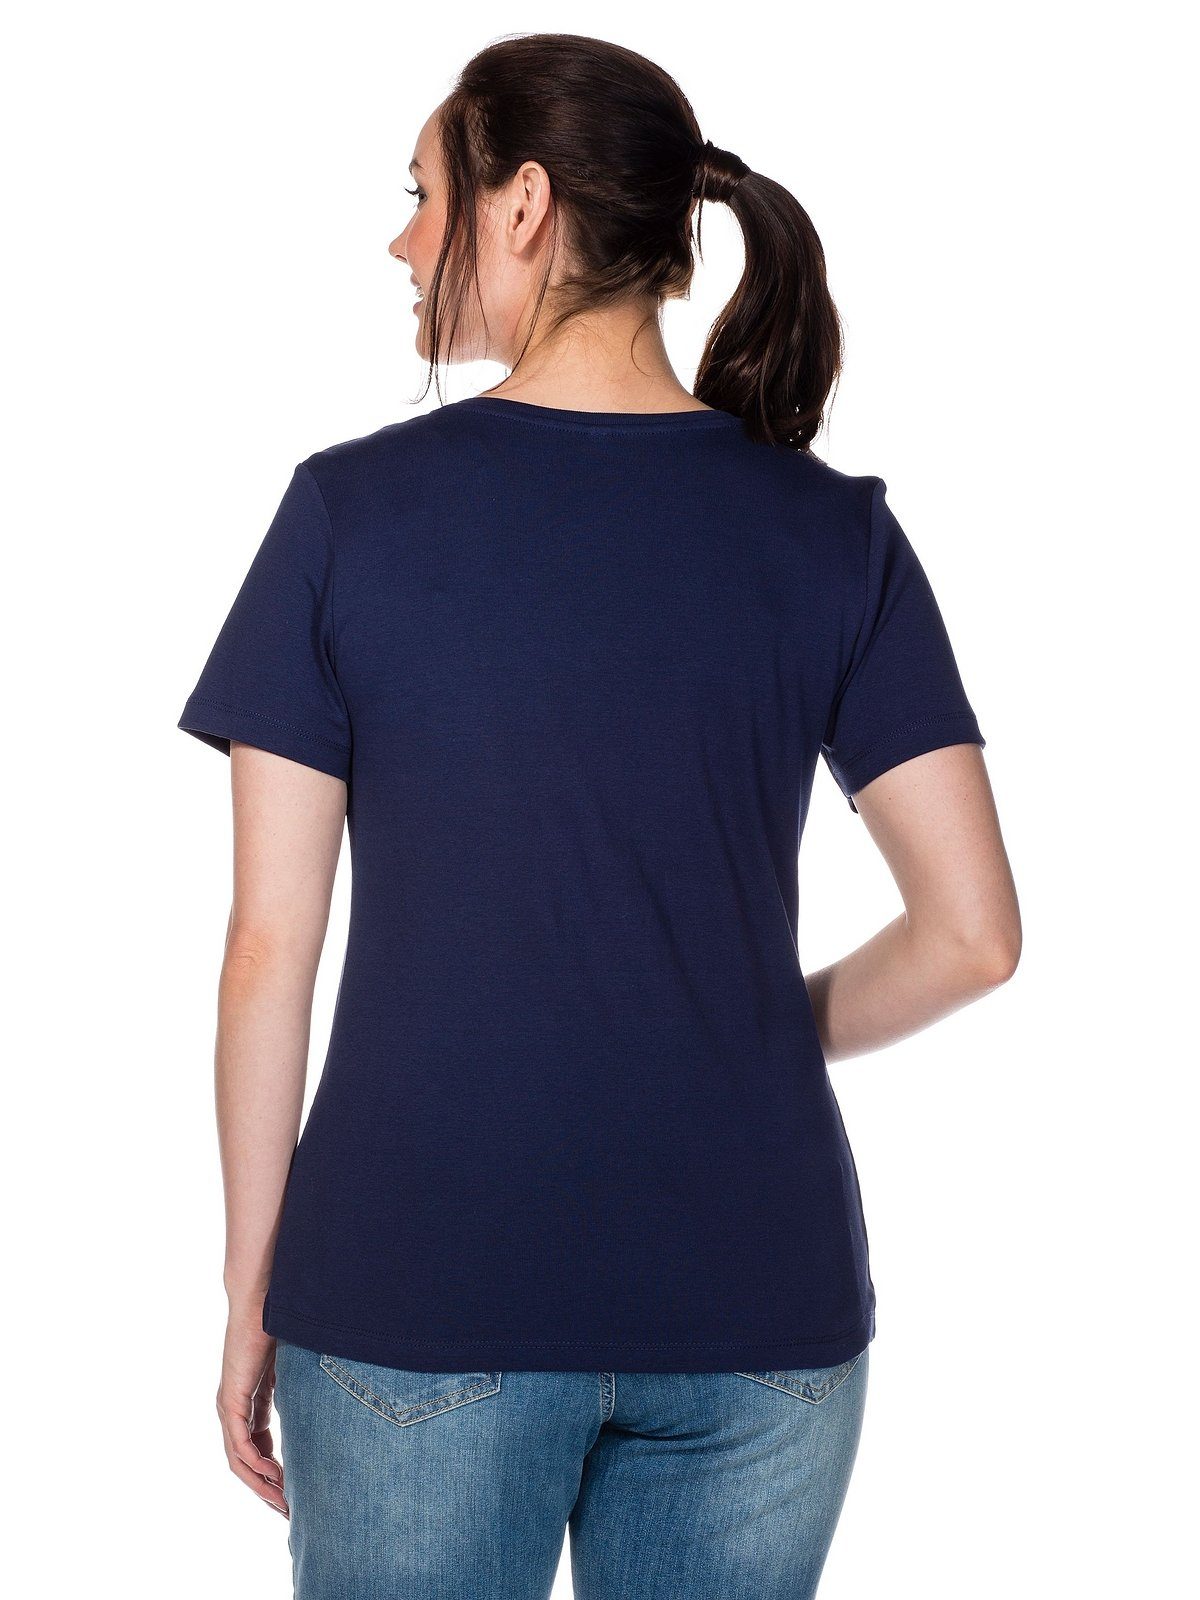 Qualität gerippter T-Shirt Große Größen marine aus fein Sheego